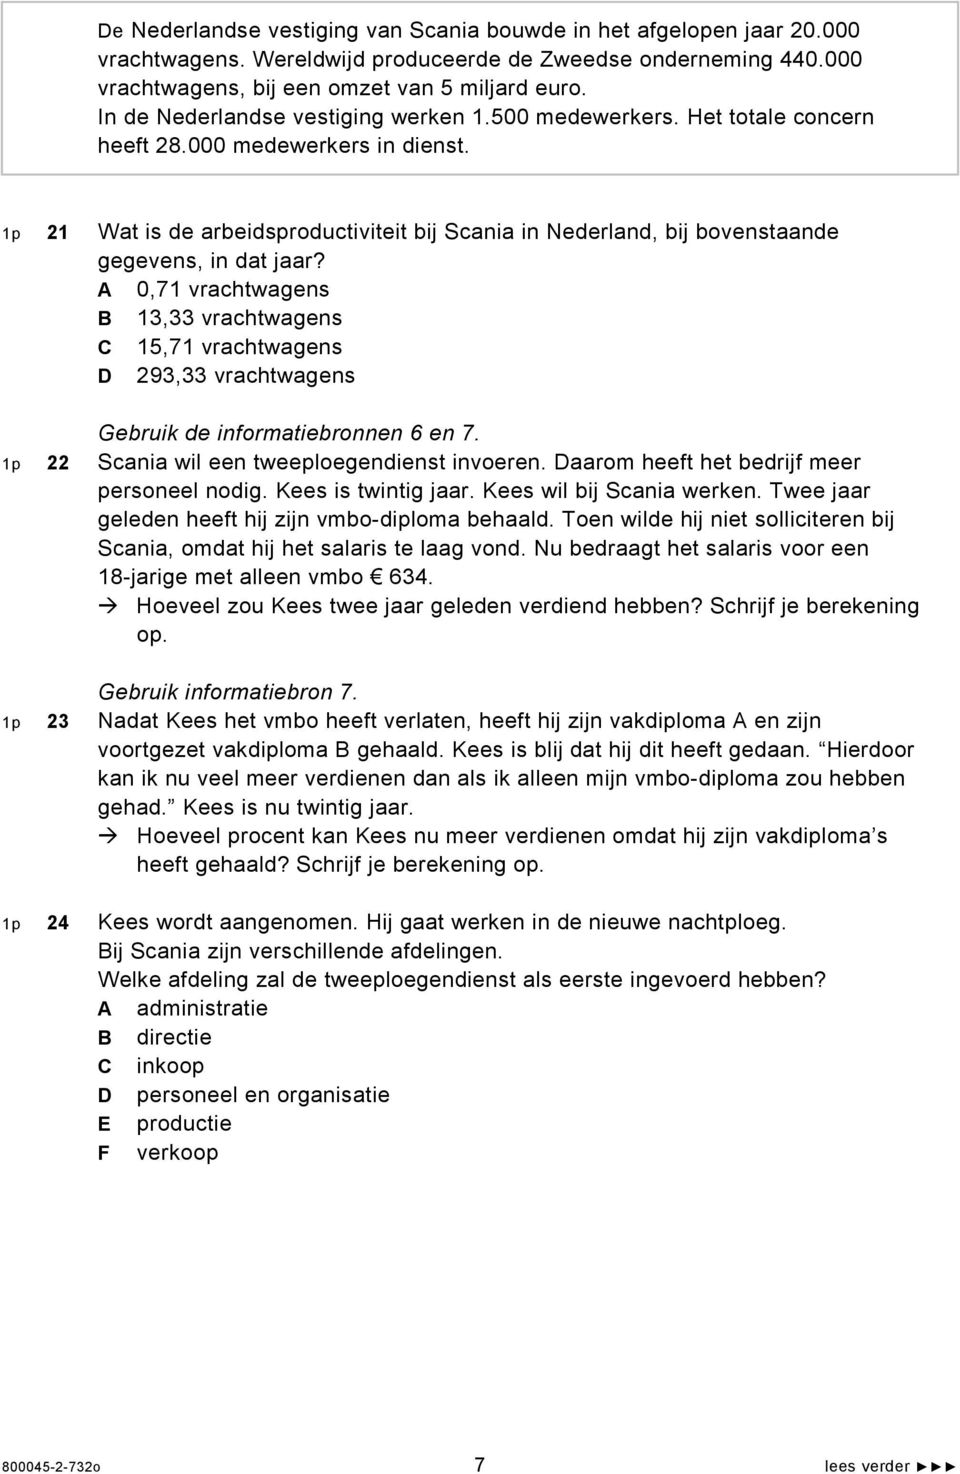 1p 21 Wat is de arbeidsproductiviteit bij Scania in Nederland, bij bovenstaande gegevens, in dat jaar?